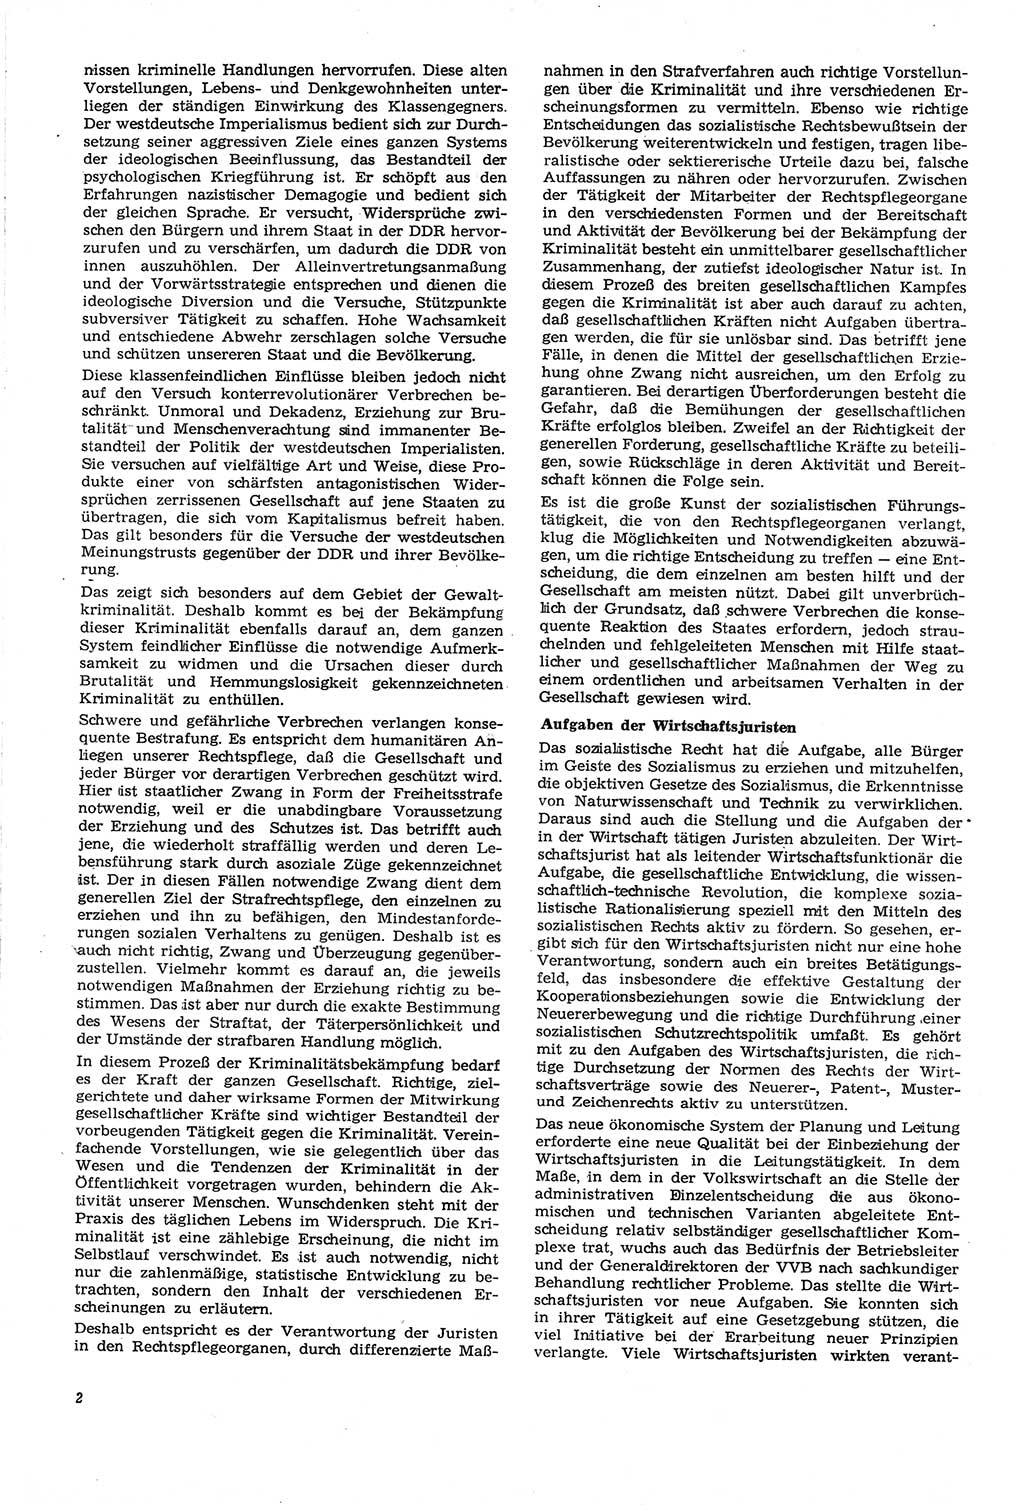 Neue Justiz (NJ), Zeitschrift für Recht und Rechtswissenschaft [Deutsche Demokratische Republik (DDR)], 21. Jahrgang 1967, Seite 2 (NJ DDR 1967, S. 2)